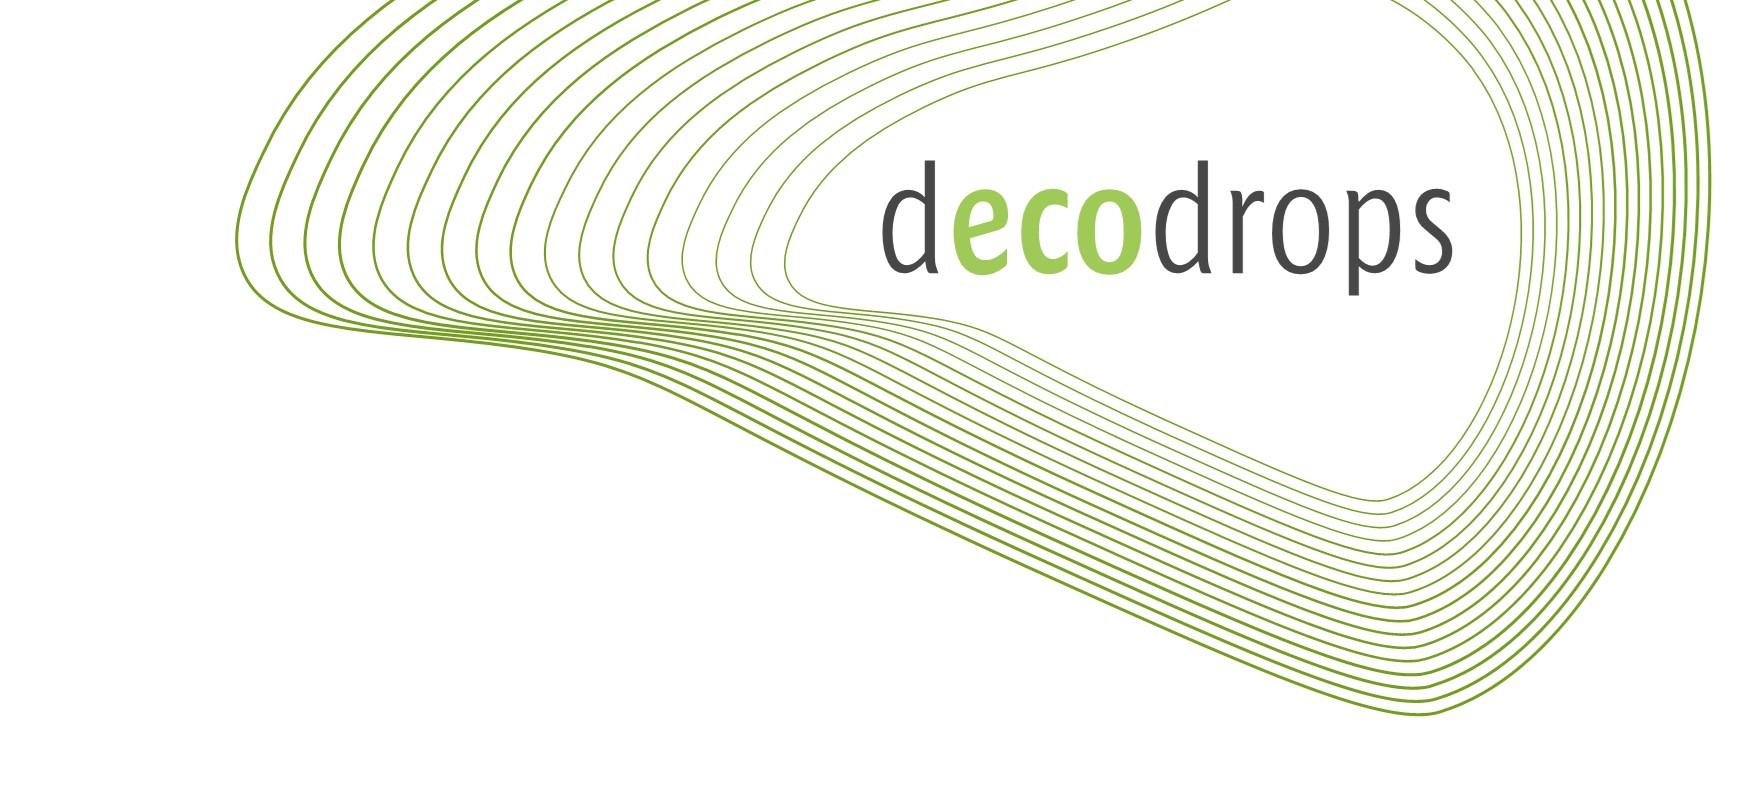 decodrops